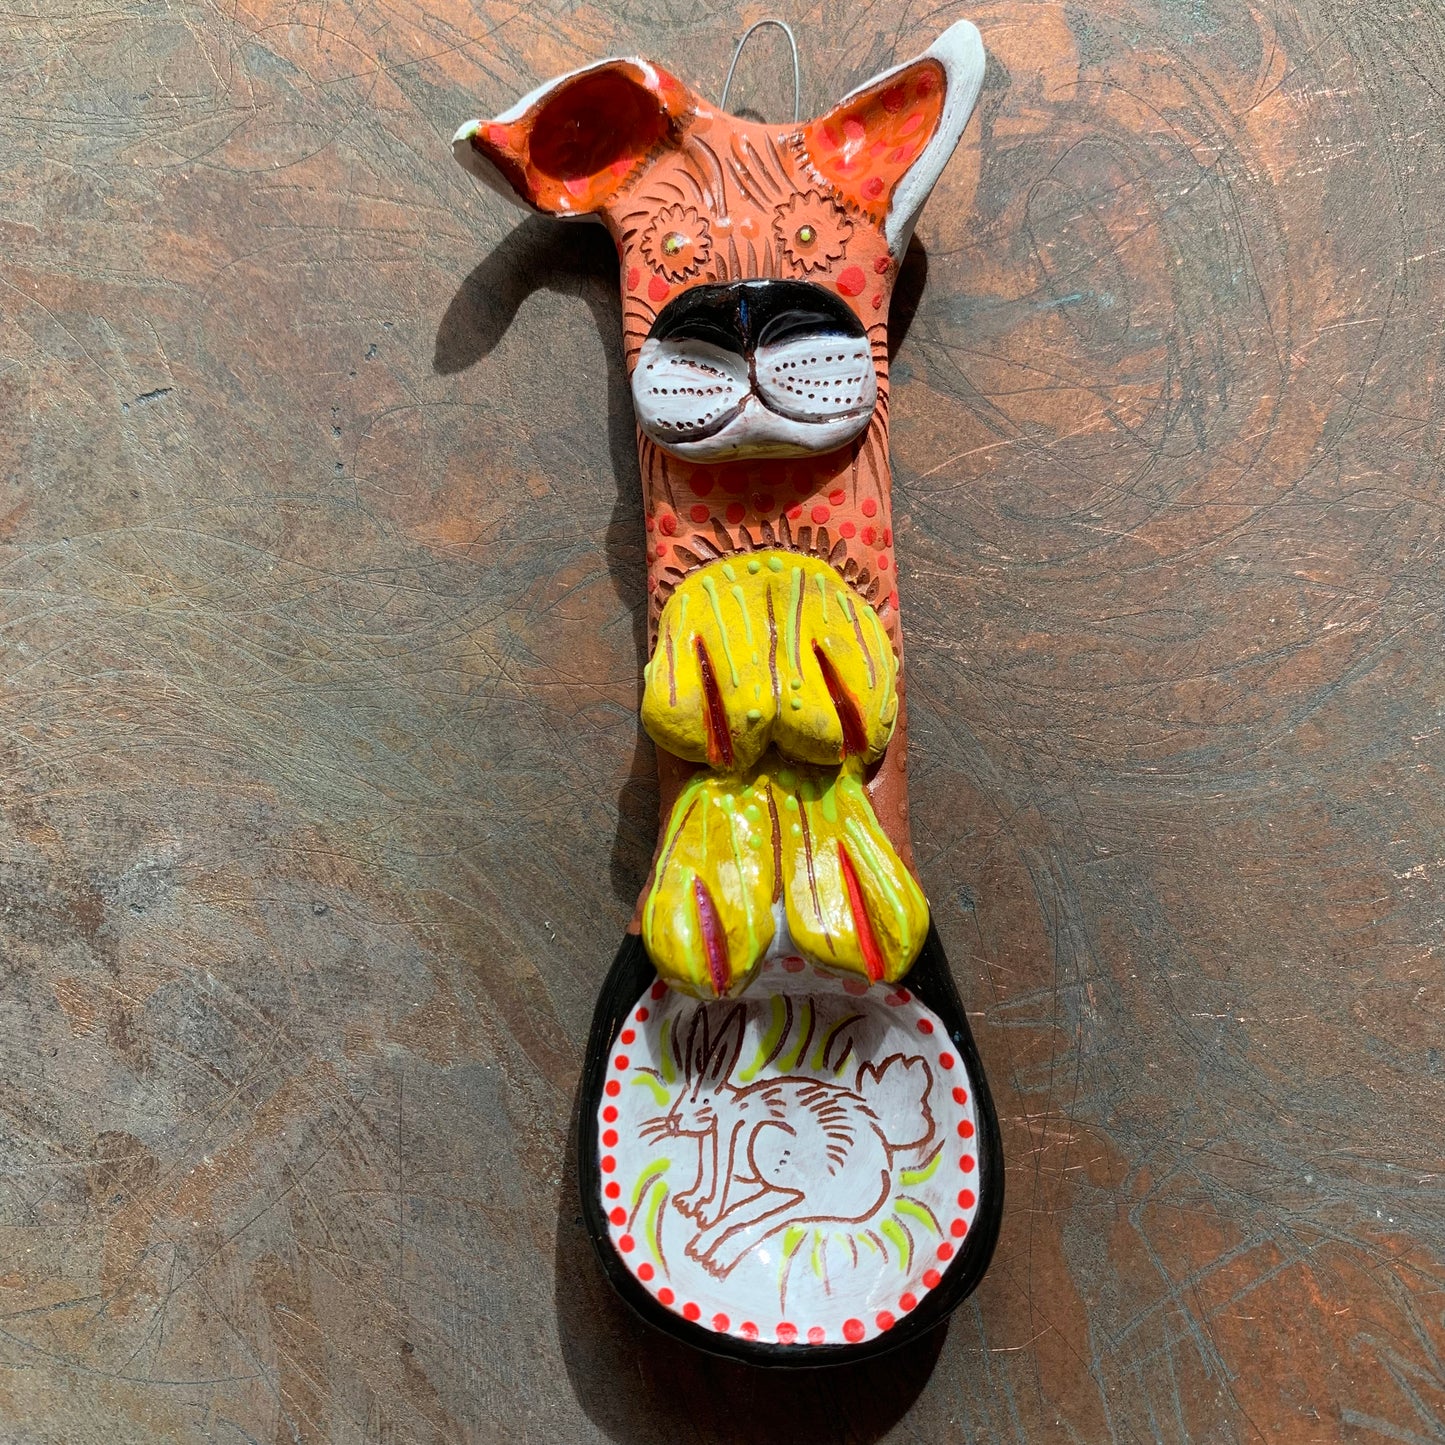 Doggie ceramic spoon